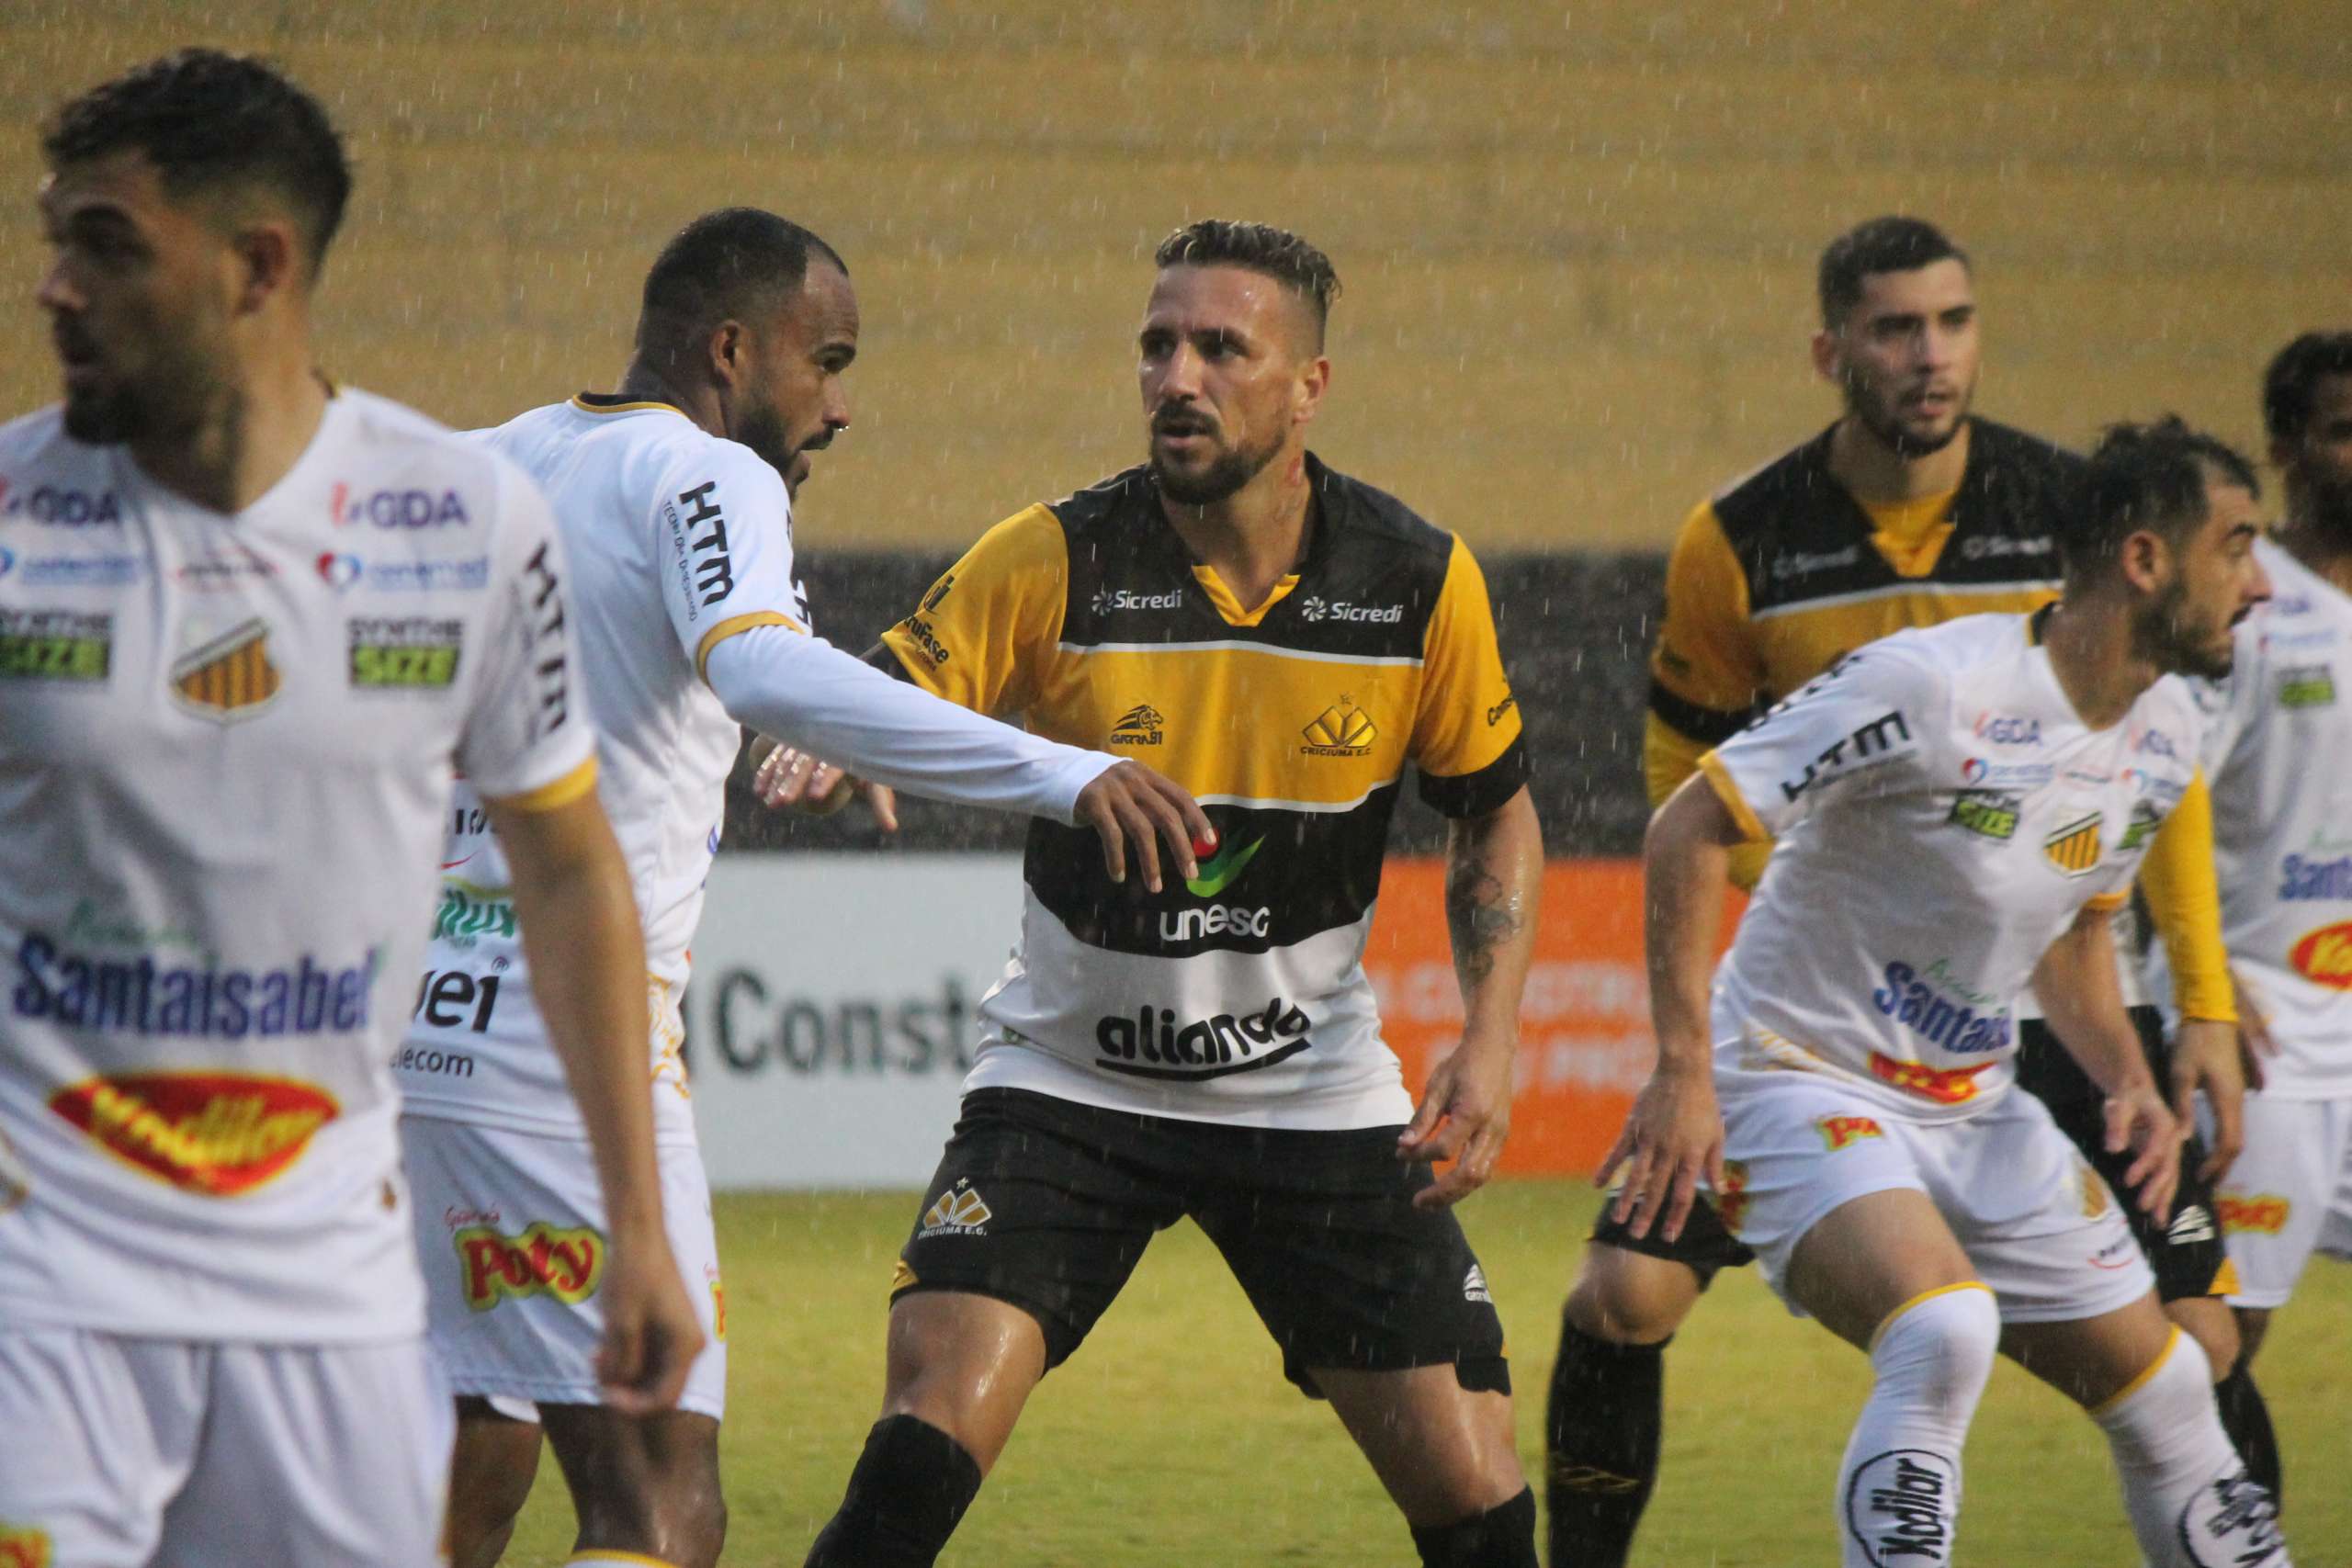 Criciúma-SC 1 x 0 Novorizontino-SP – Vitória e nova liderança no Grupo B da Série C